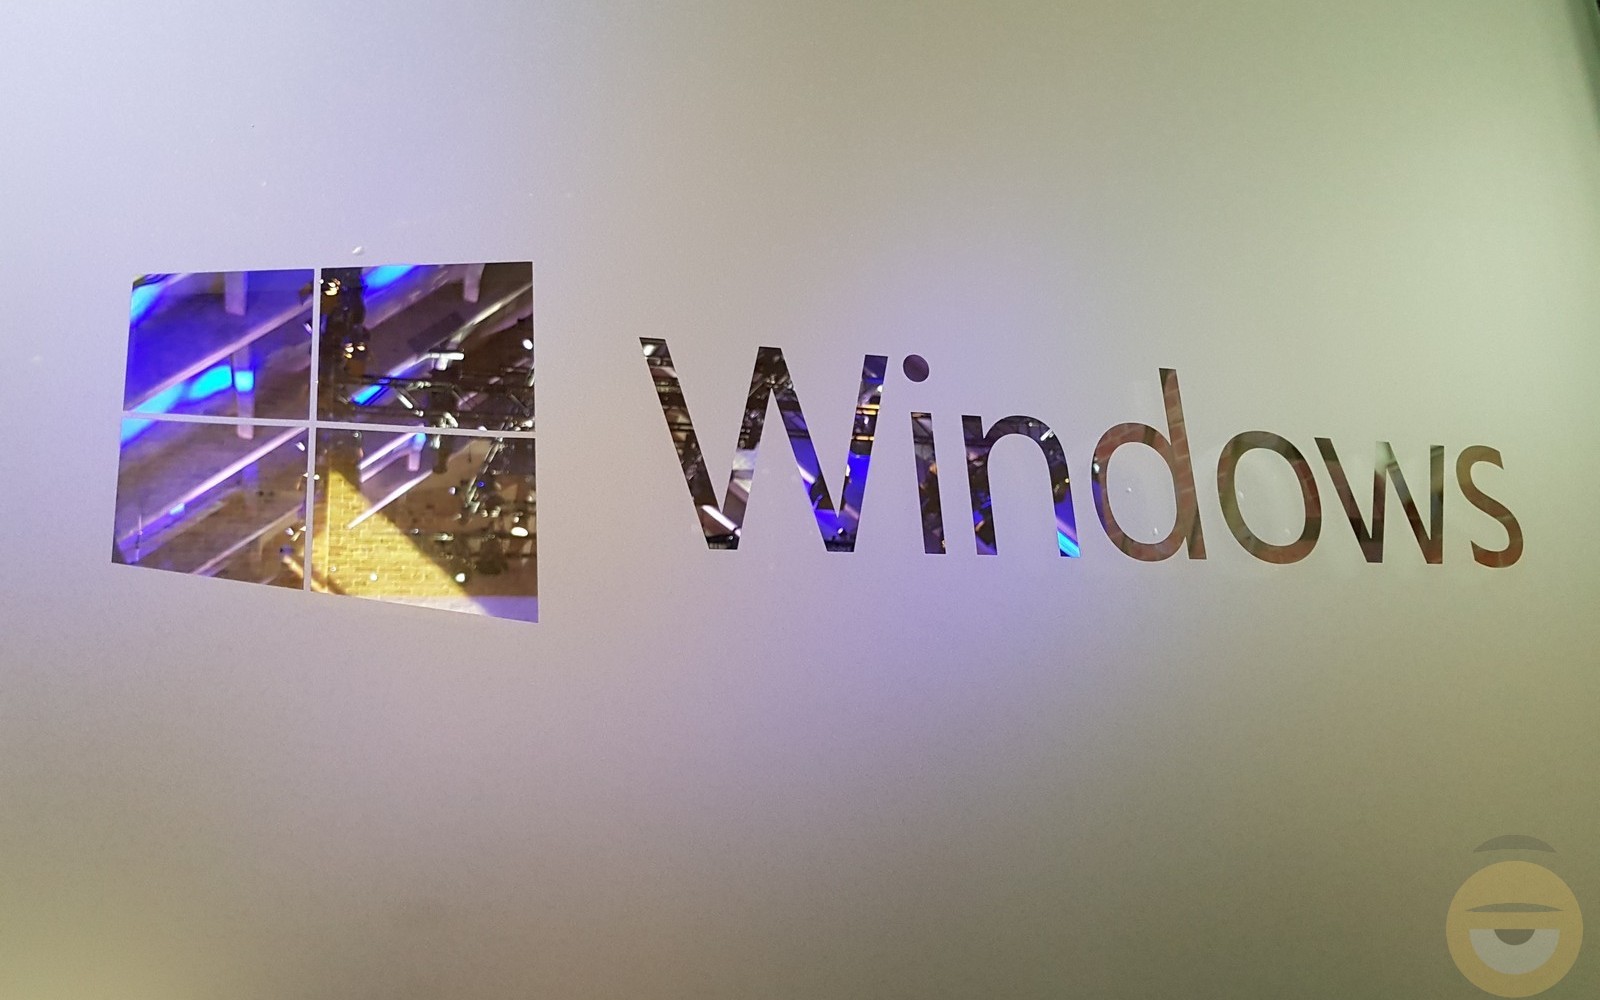 Τα Windows 10 σαρώνουν με 1.3 δισεκατομμύρια ενεργούς χρήστες